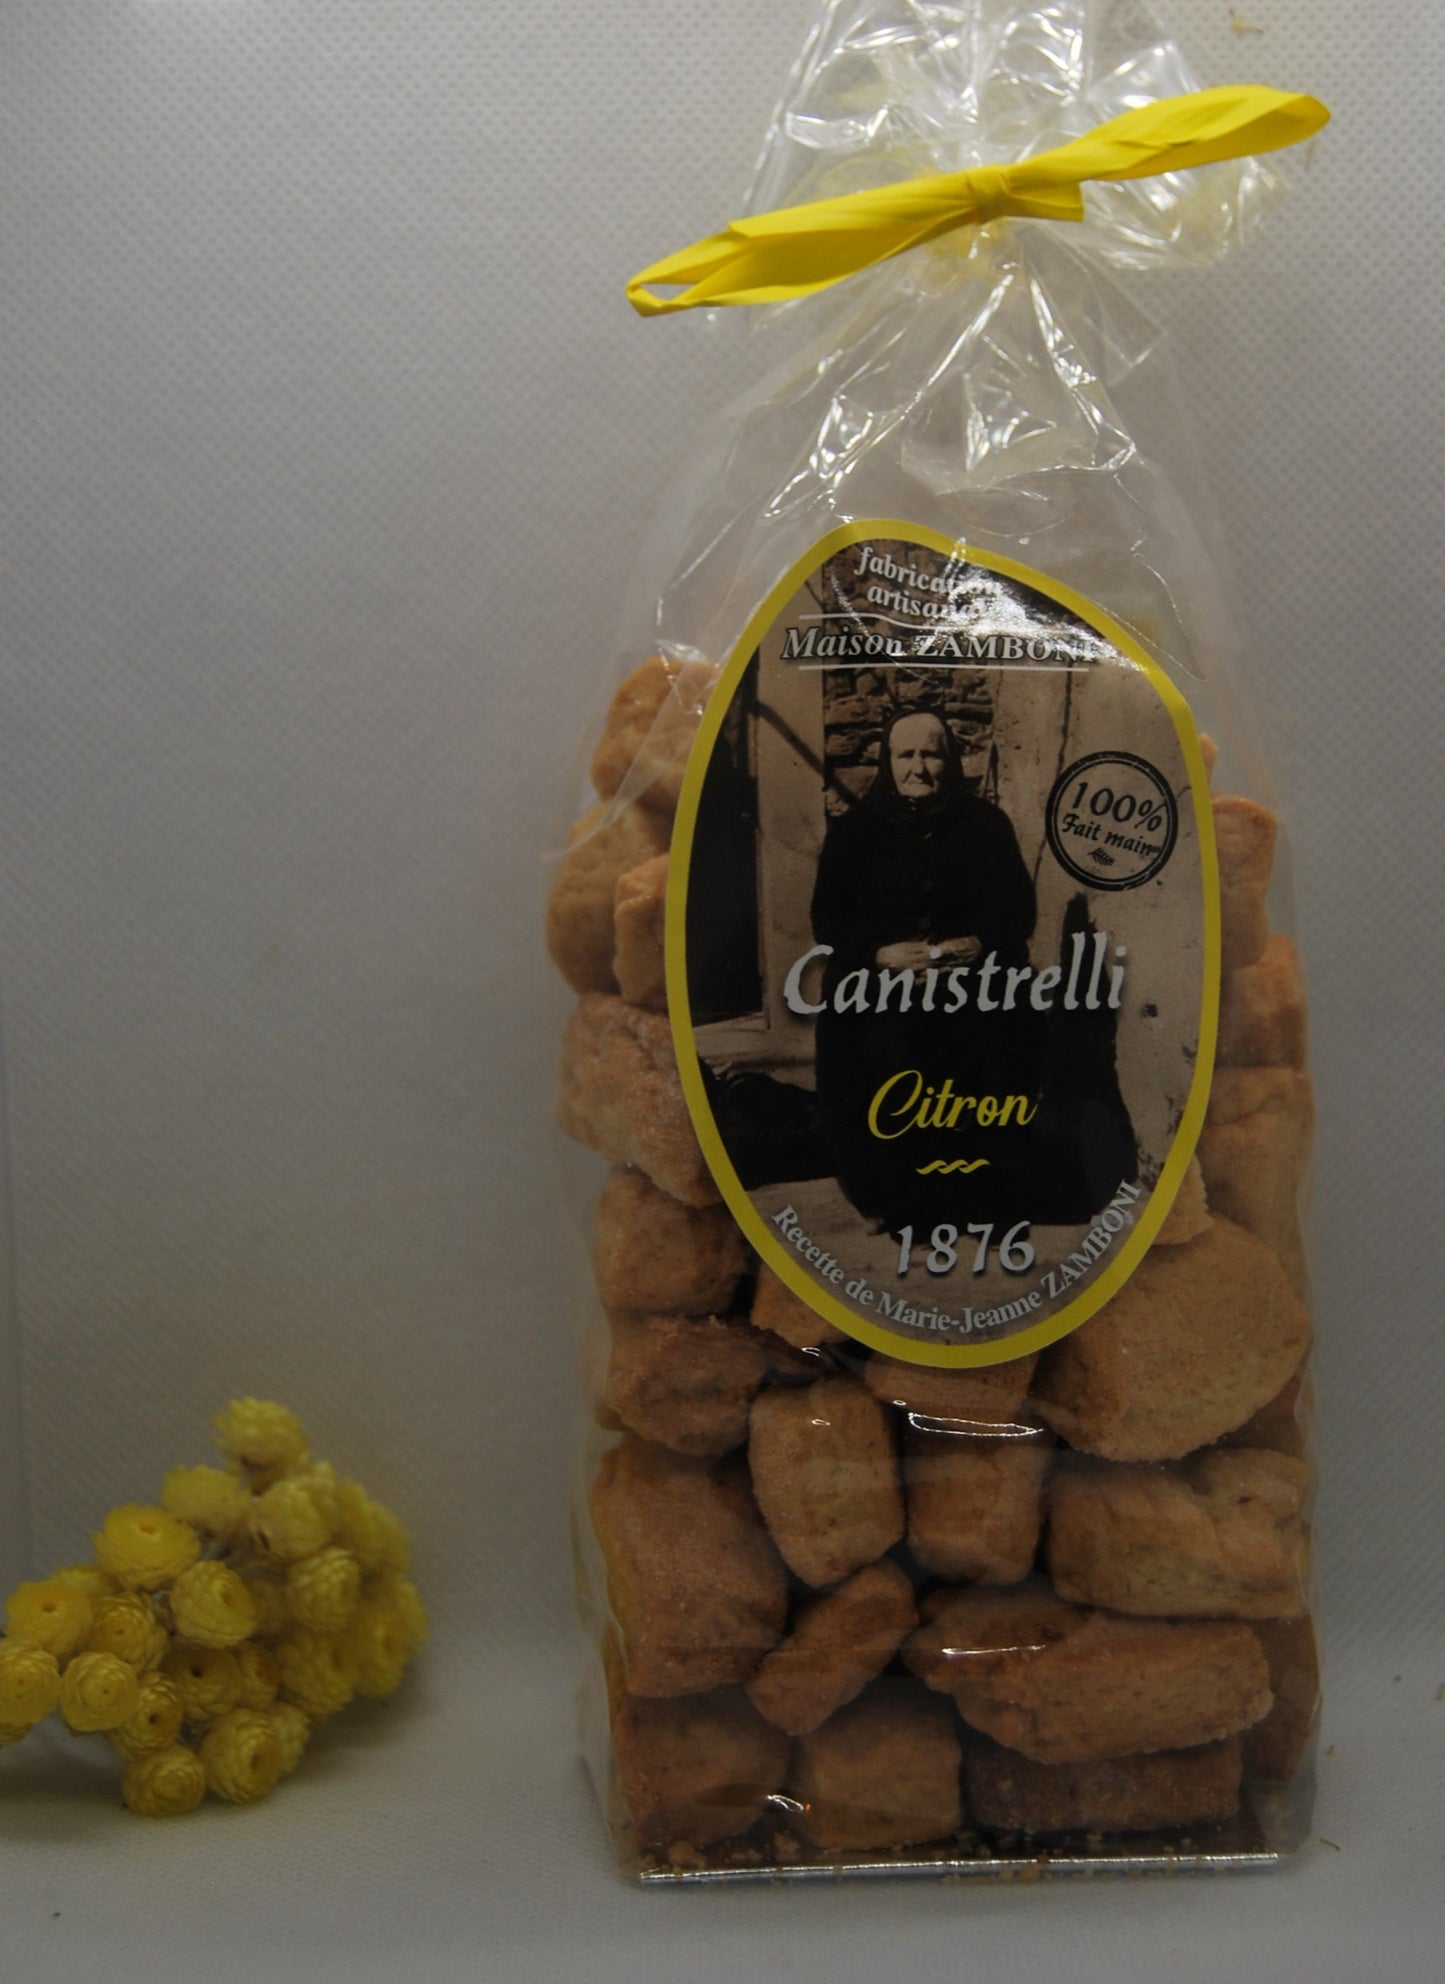 Canistrelli - Citron - Maison Zamboni